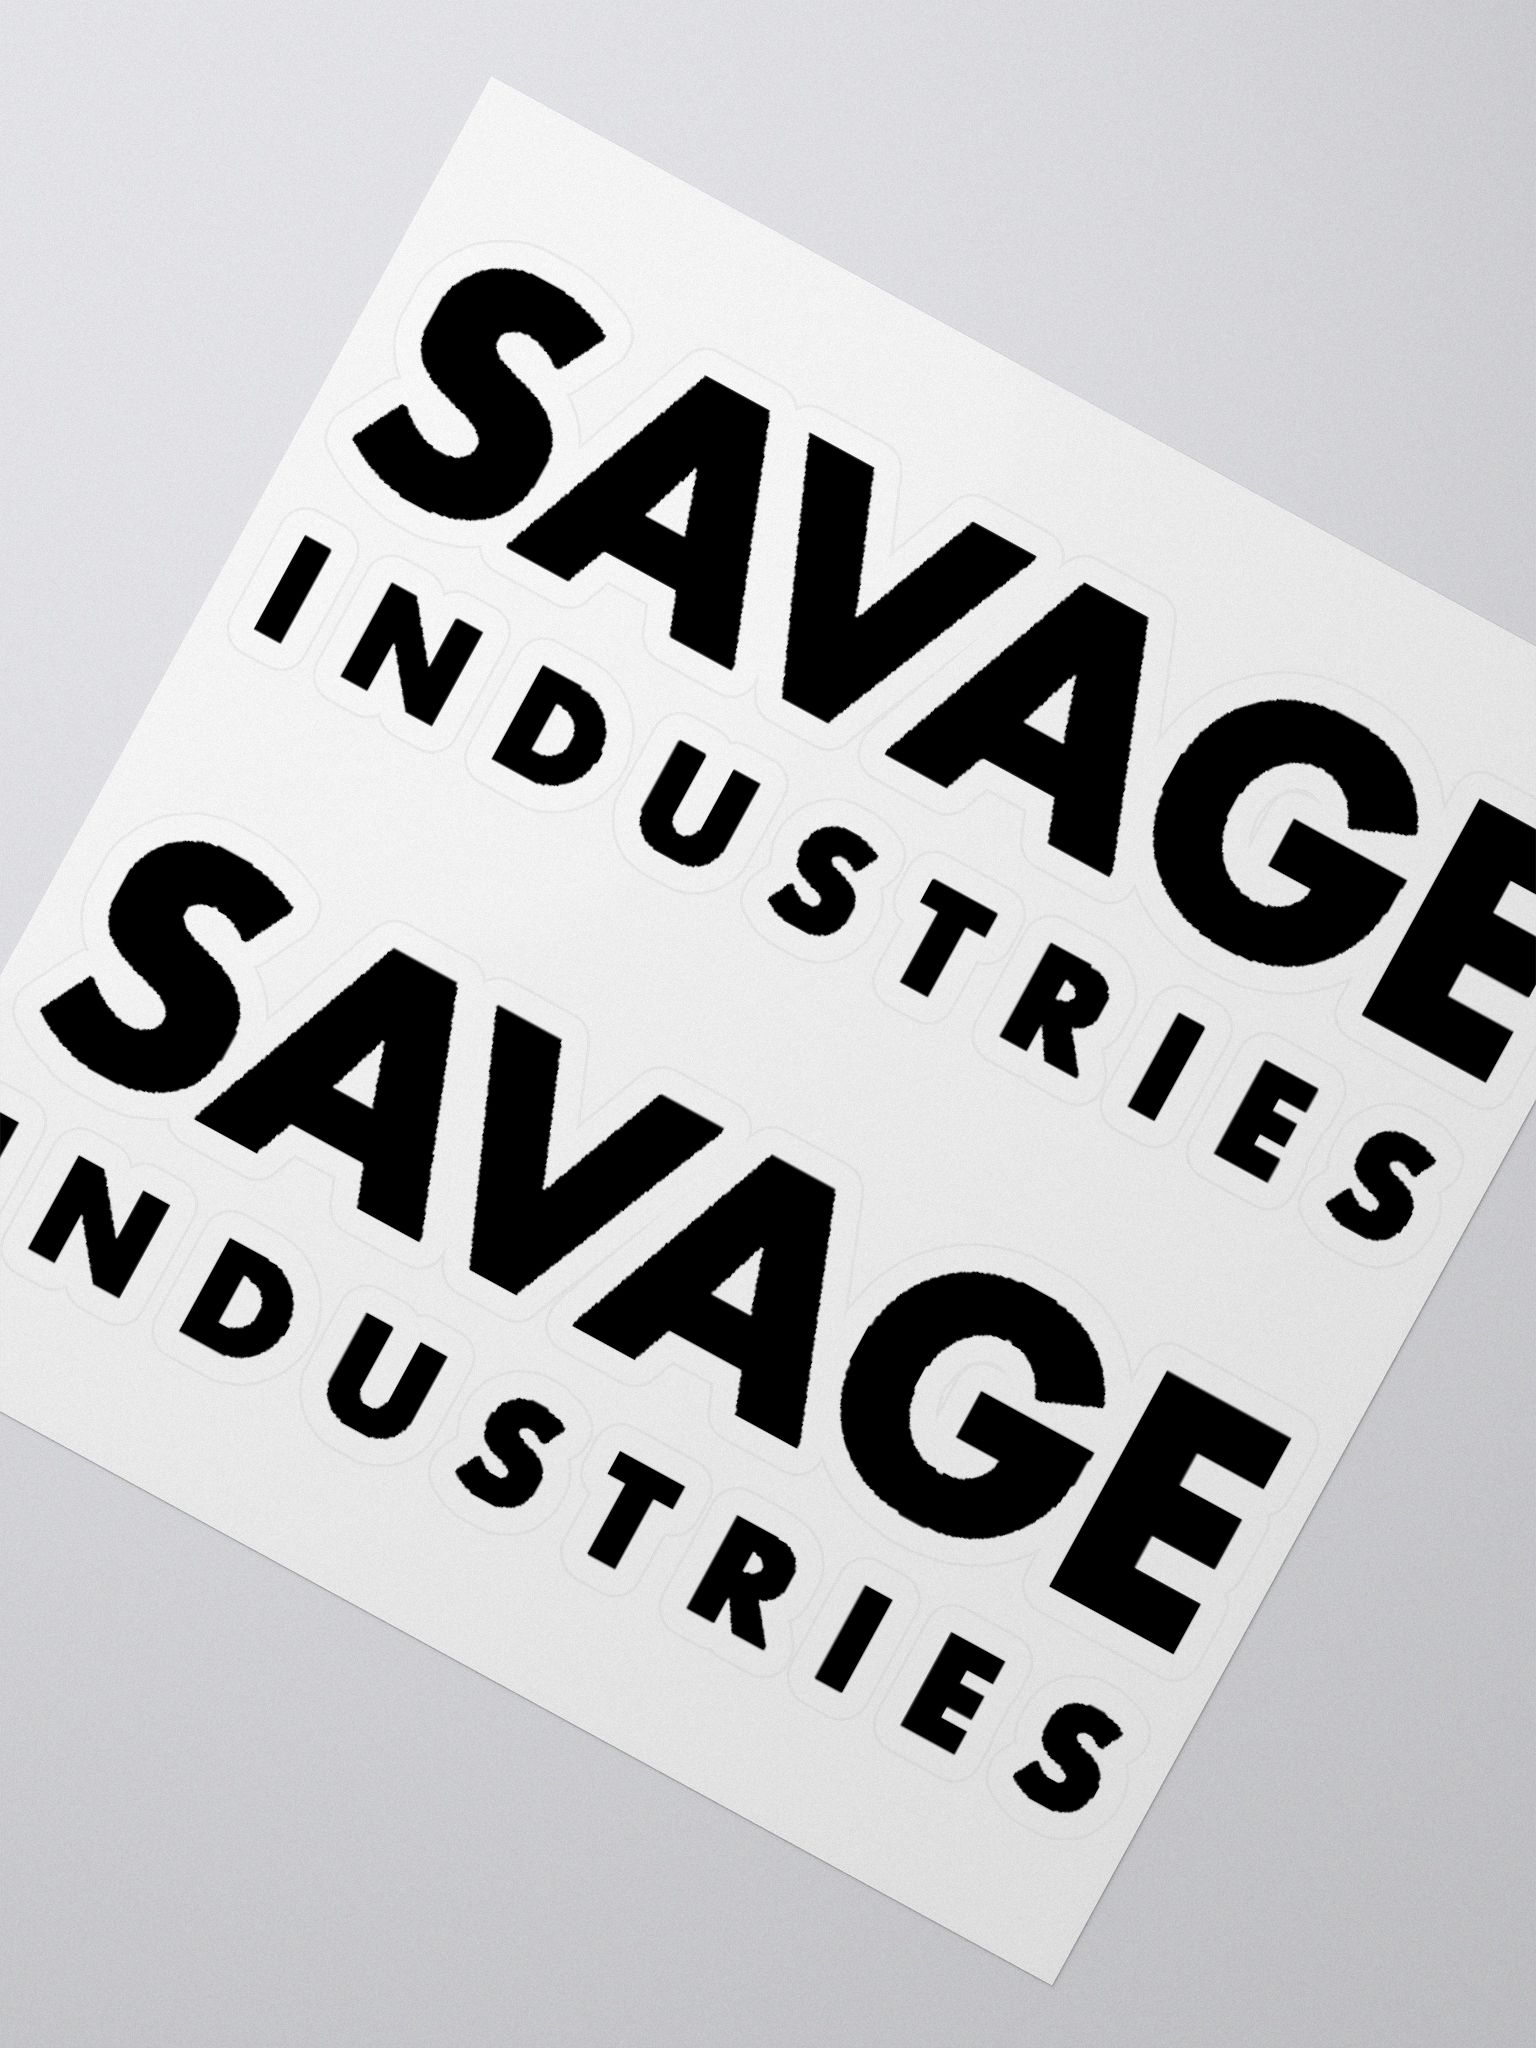 savage logo